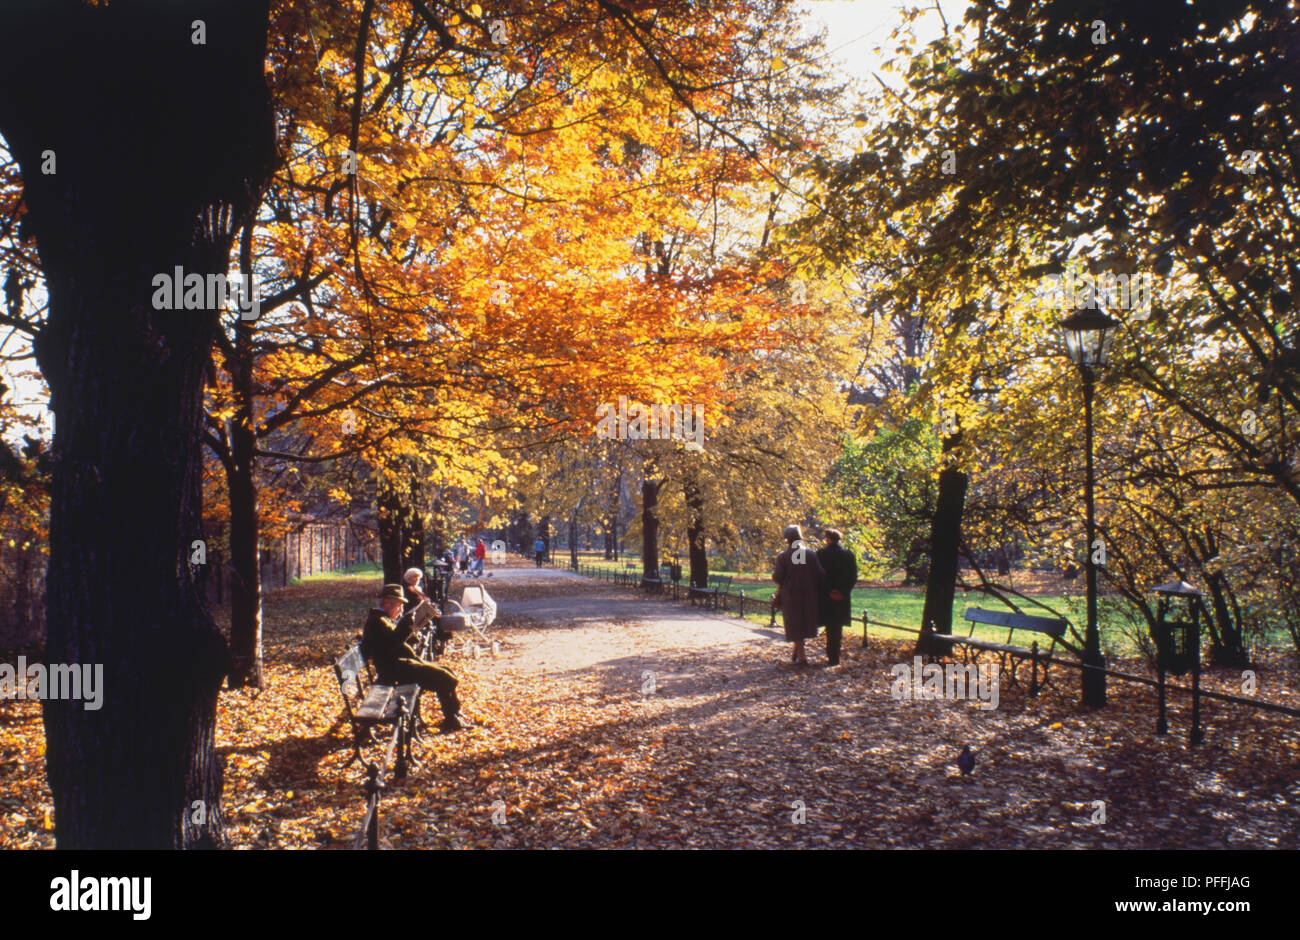 Polen, Krakau, die Planty, Leute sitzen auf Bänken und einem Bummel entlang Parklandschaft weg, mit Bäume werfen ihre Herbstliche Blätter flankiert. Stockfoto